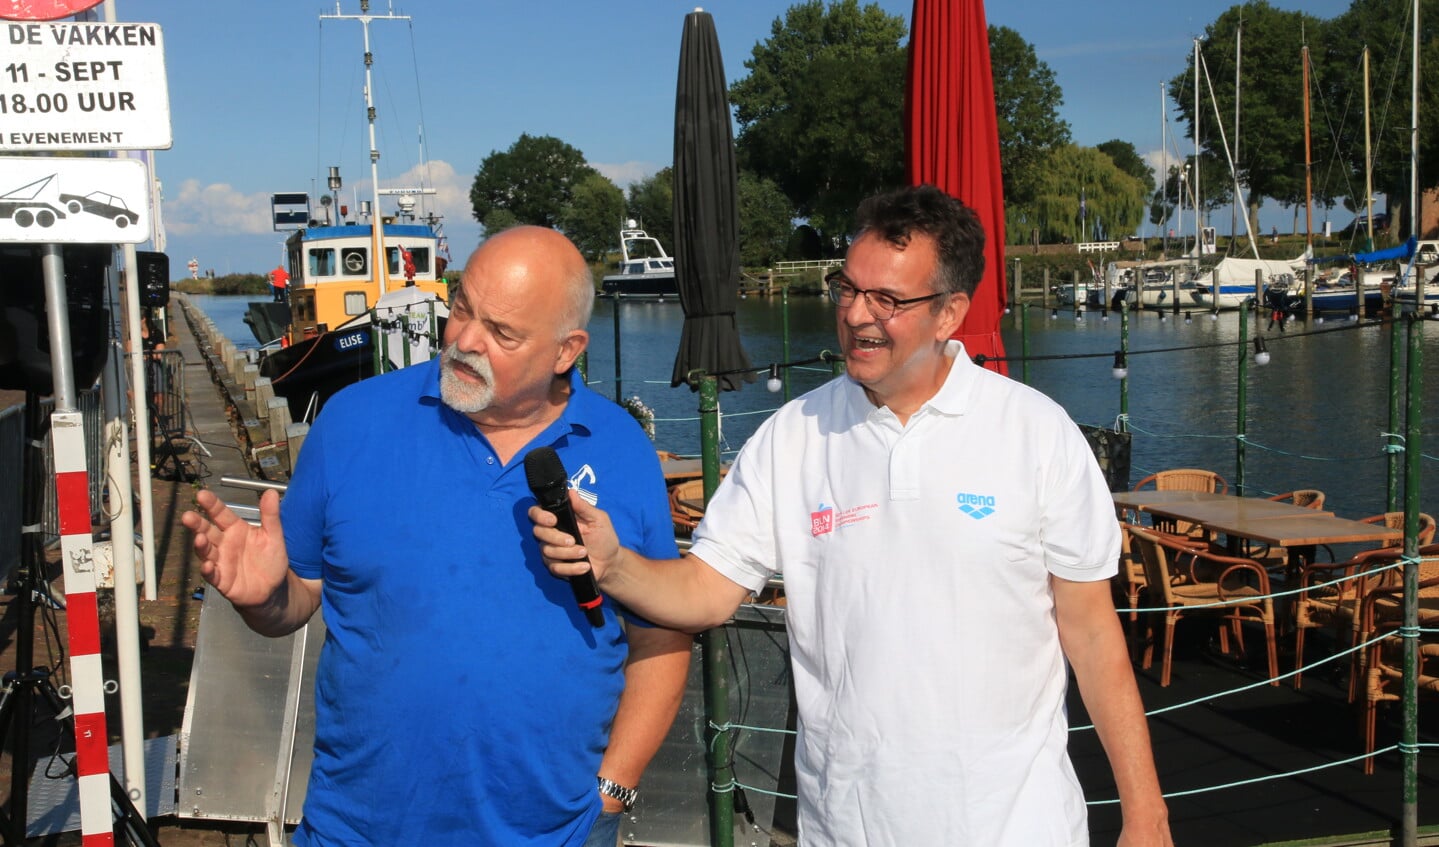 Joost Kuijlaars in gesprek met Jack Brakeboer bij de finish in de Oosterhaven.